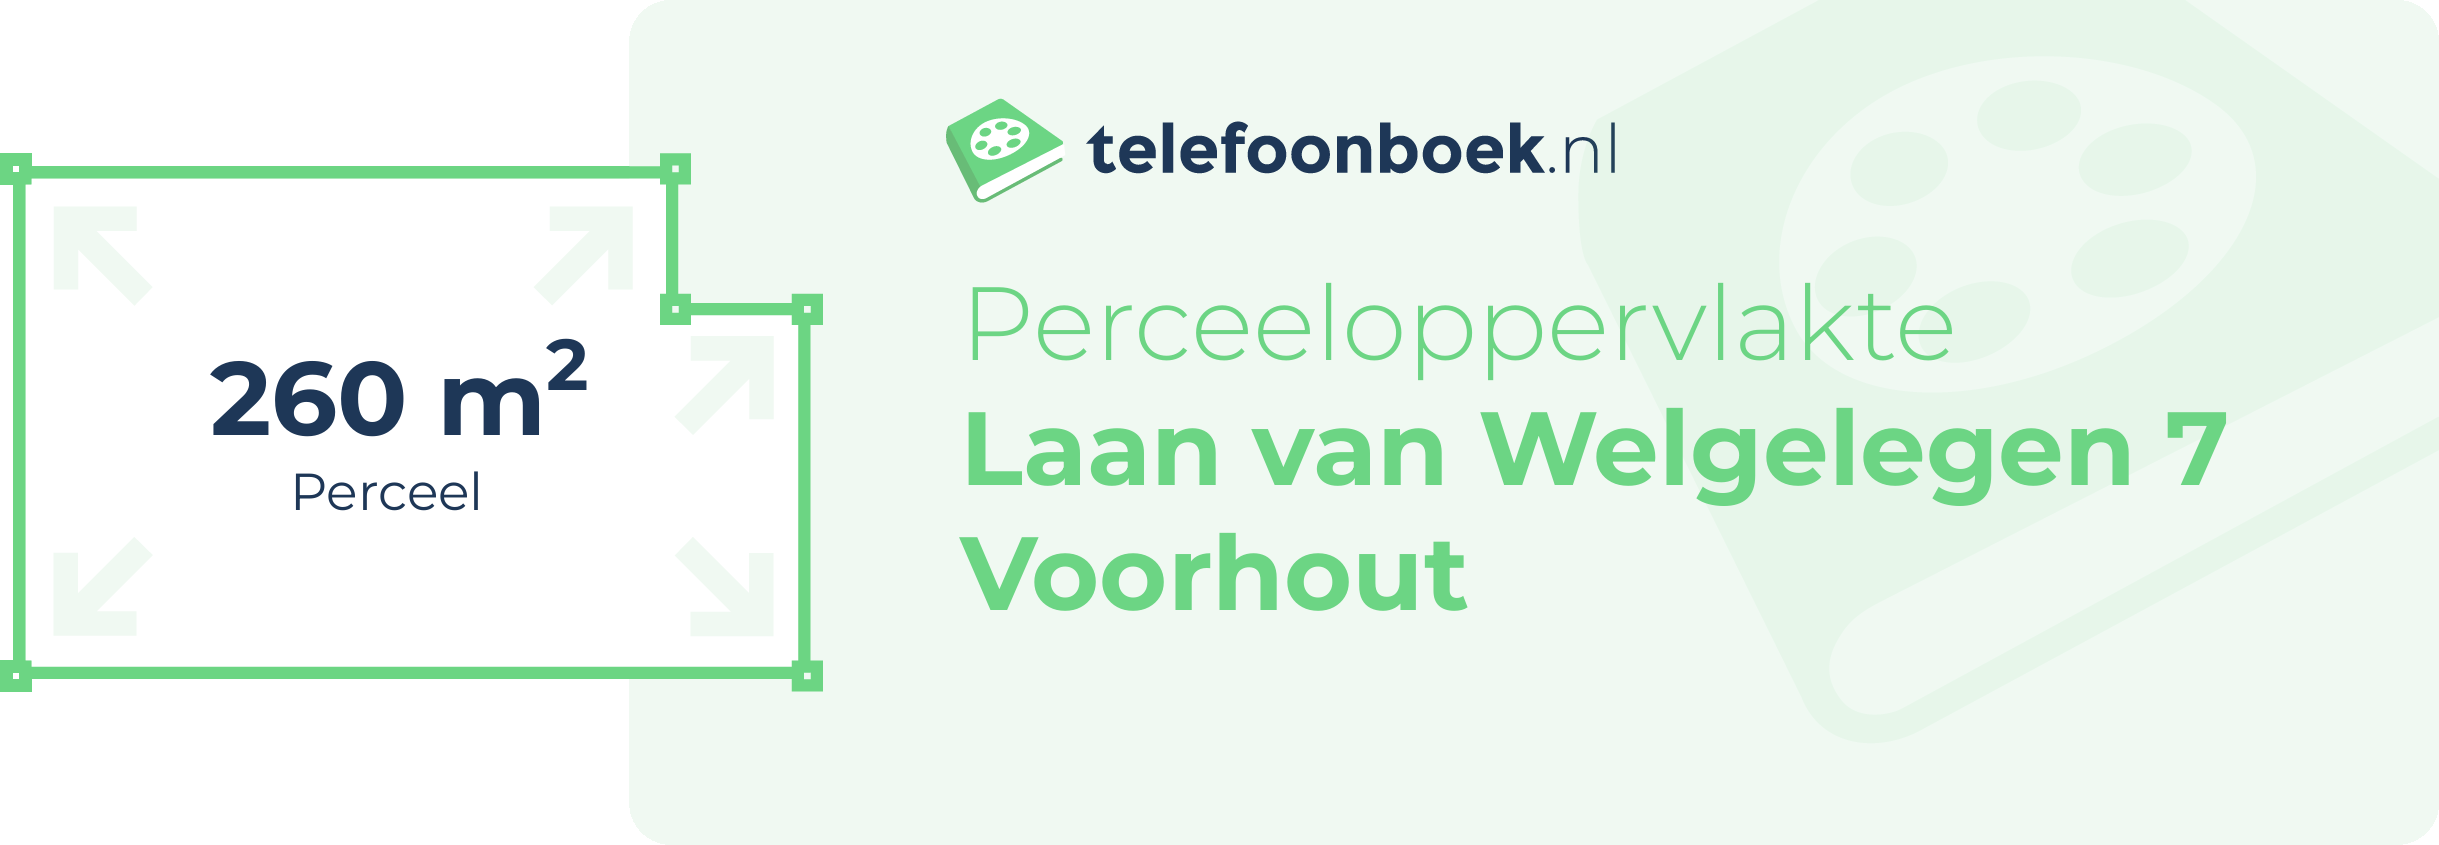 Perceeloppervlakte Laan Van Welgelegen 7 Voorhout